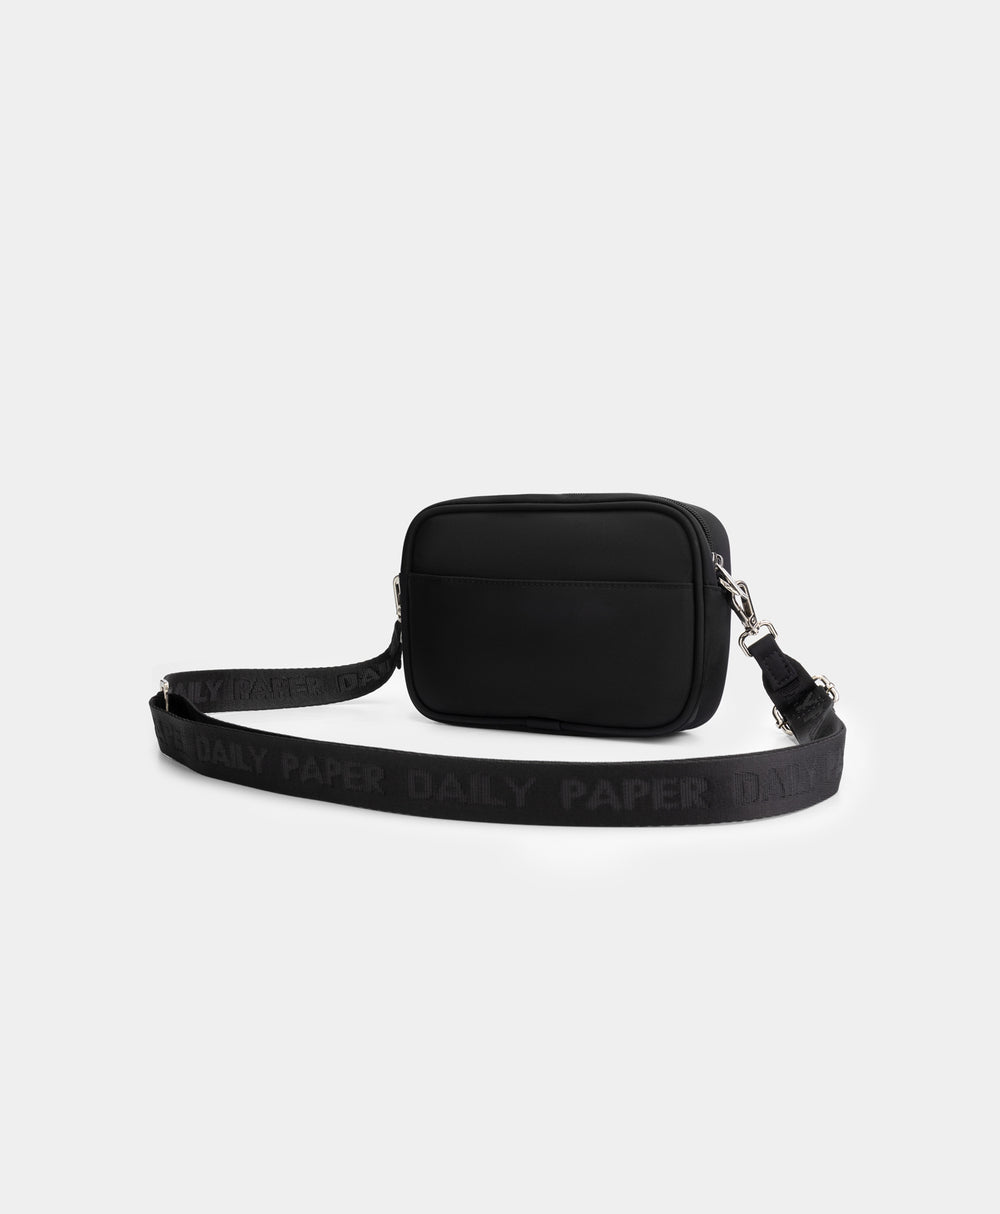 DP - Black Hame Bag - Packshot - Rear